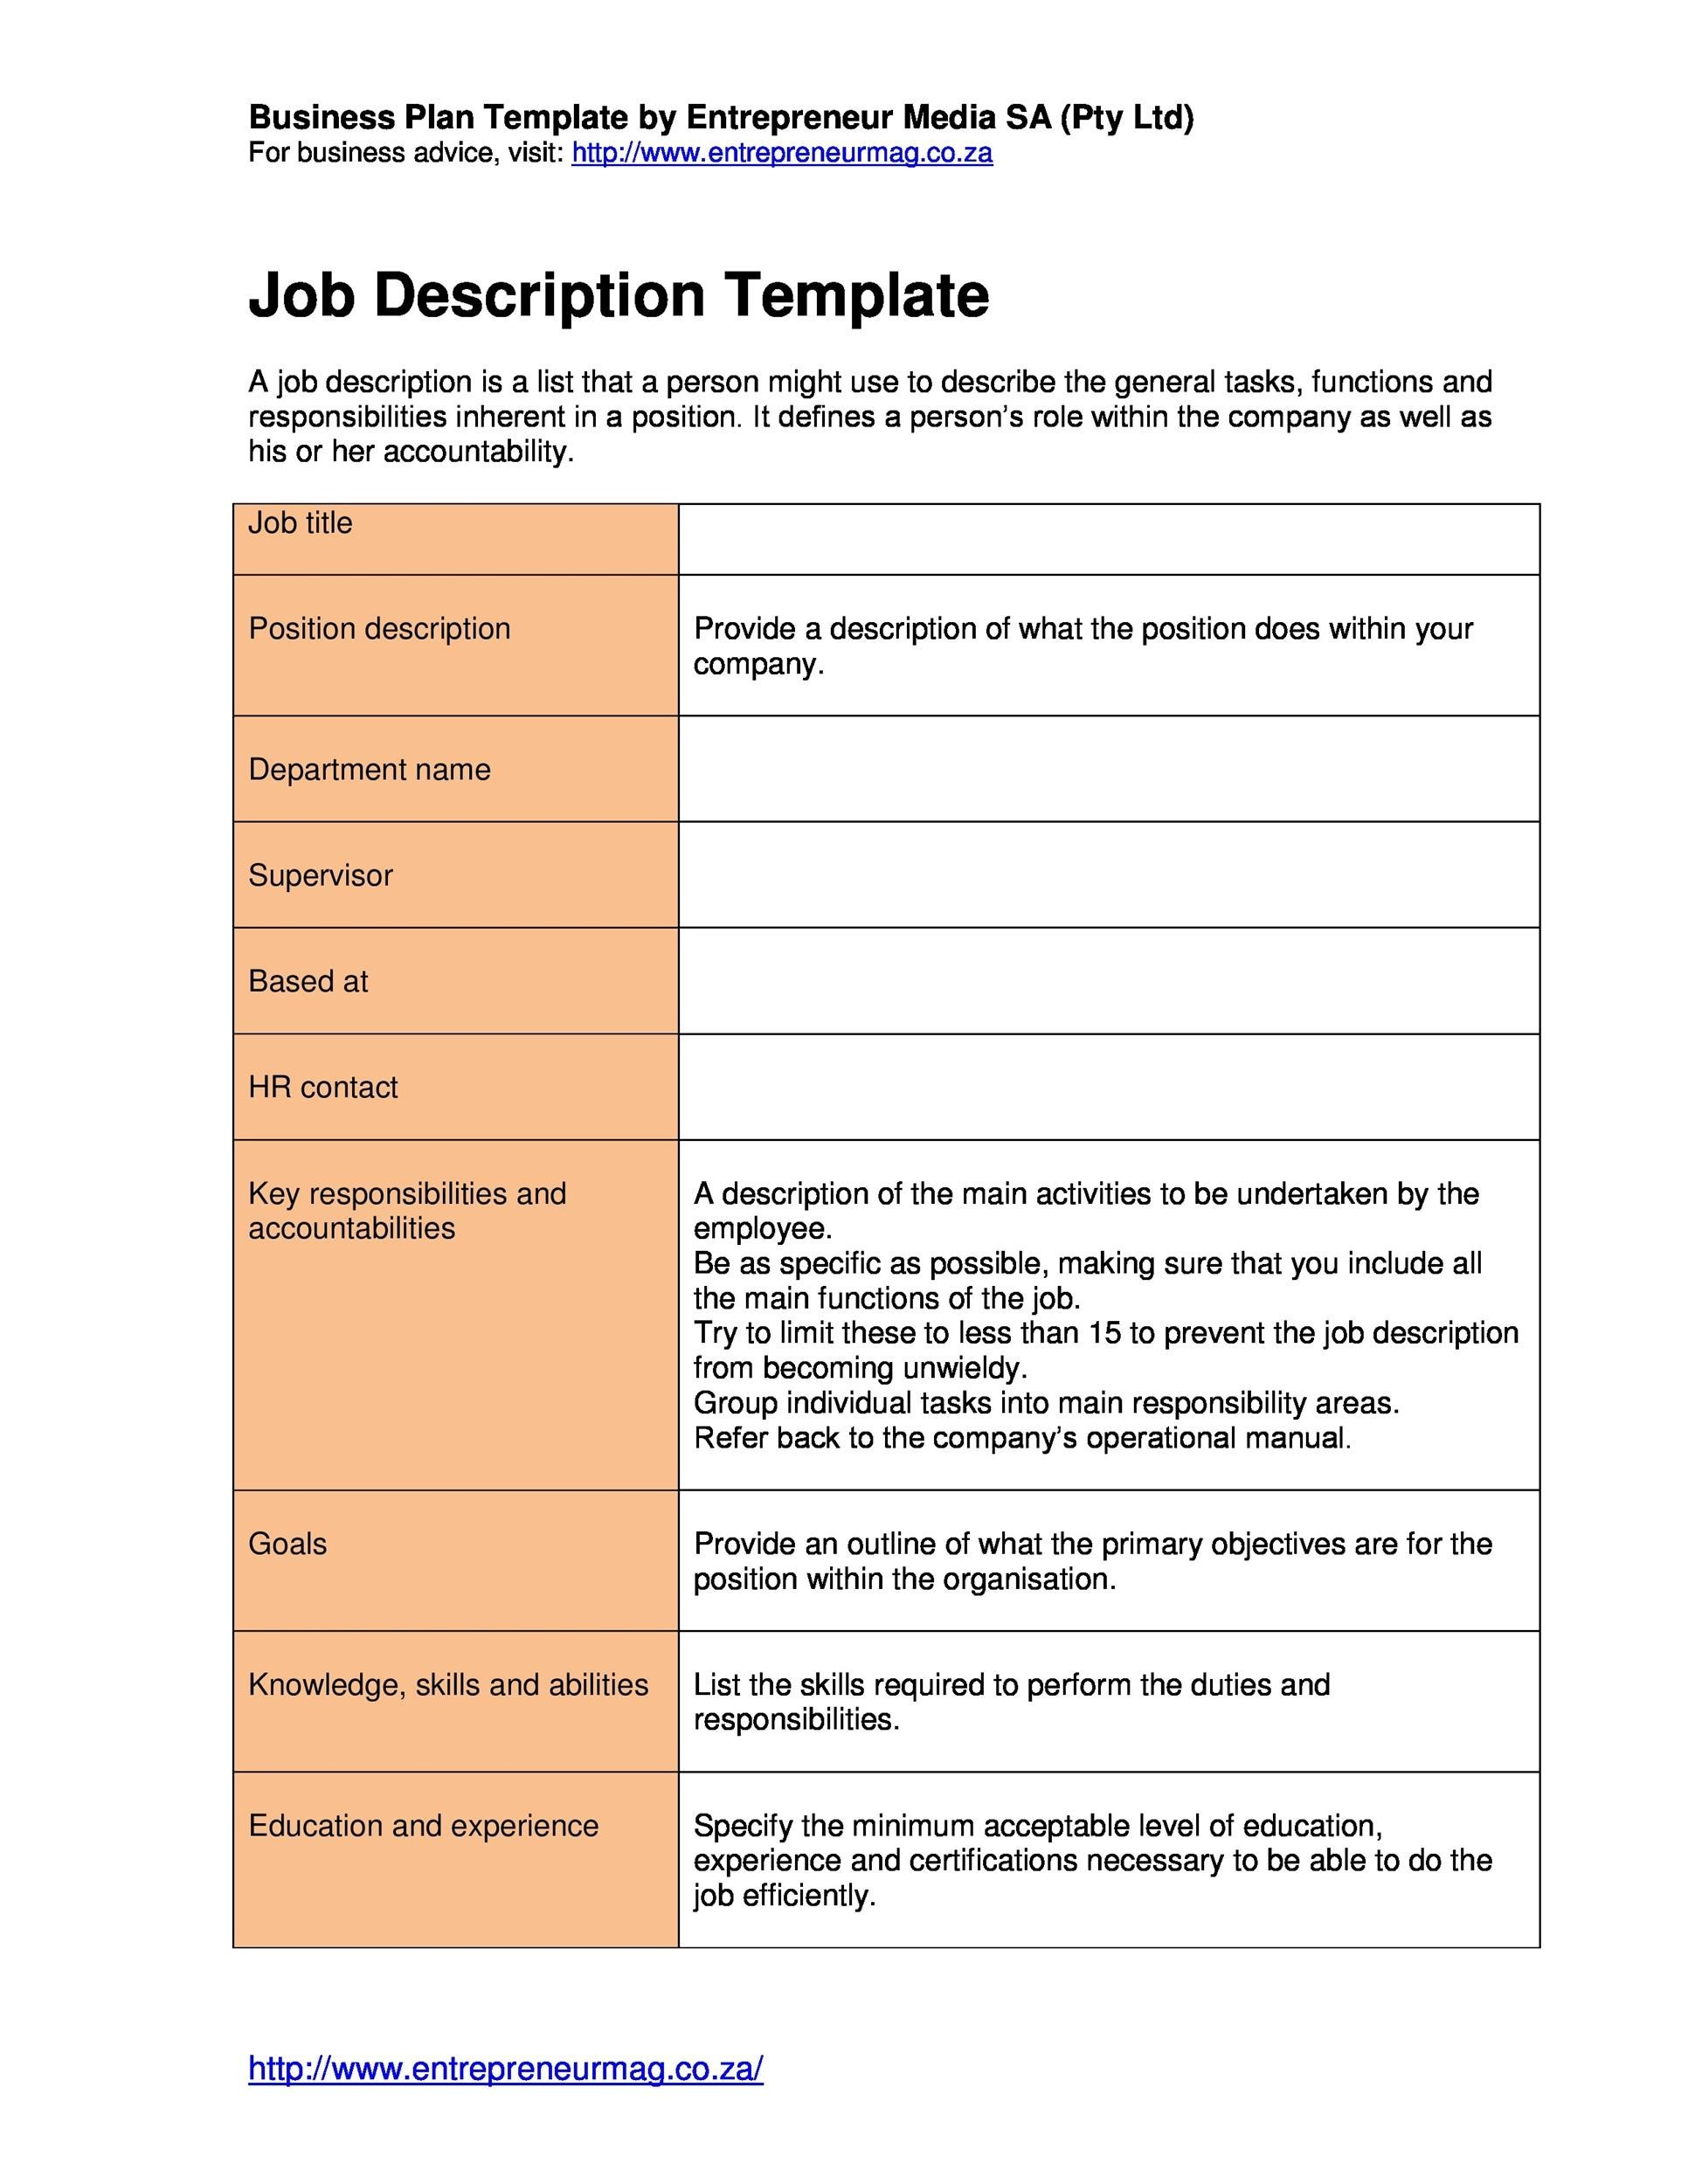 10 Job Description Templates & Examples ᐅ TemplateLab With Modern Job Description Template Within Modern Job Description Template